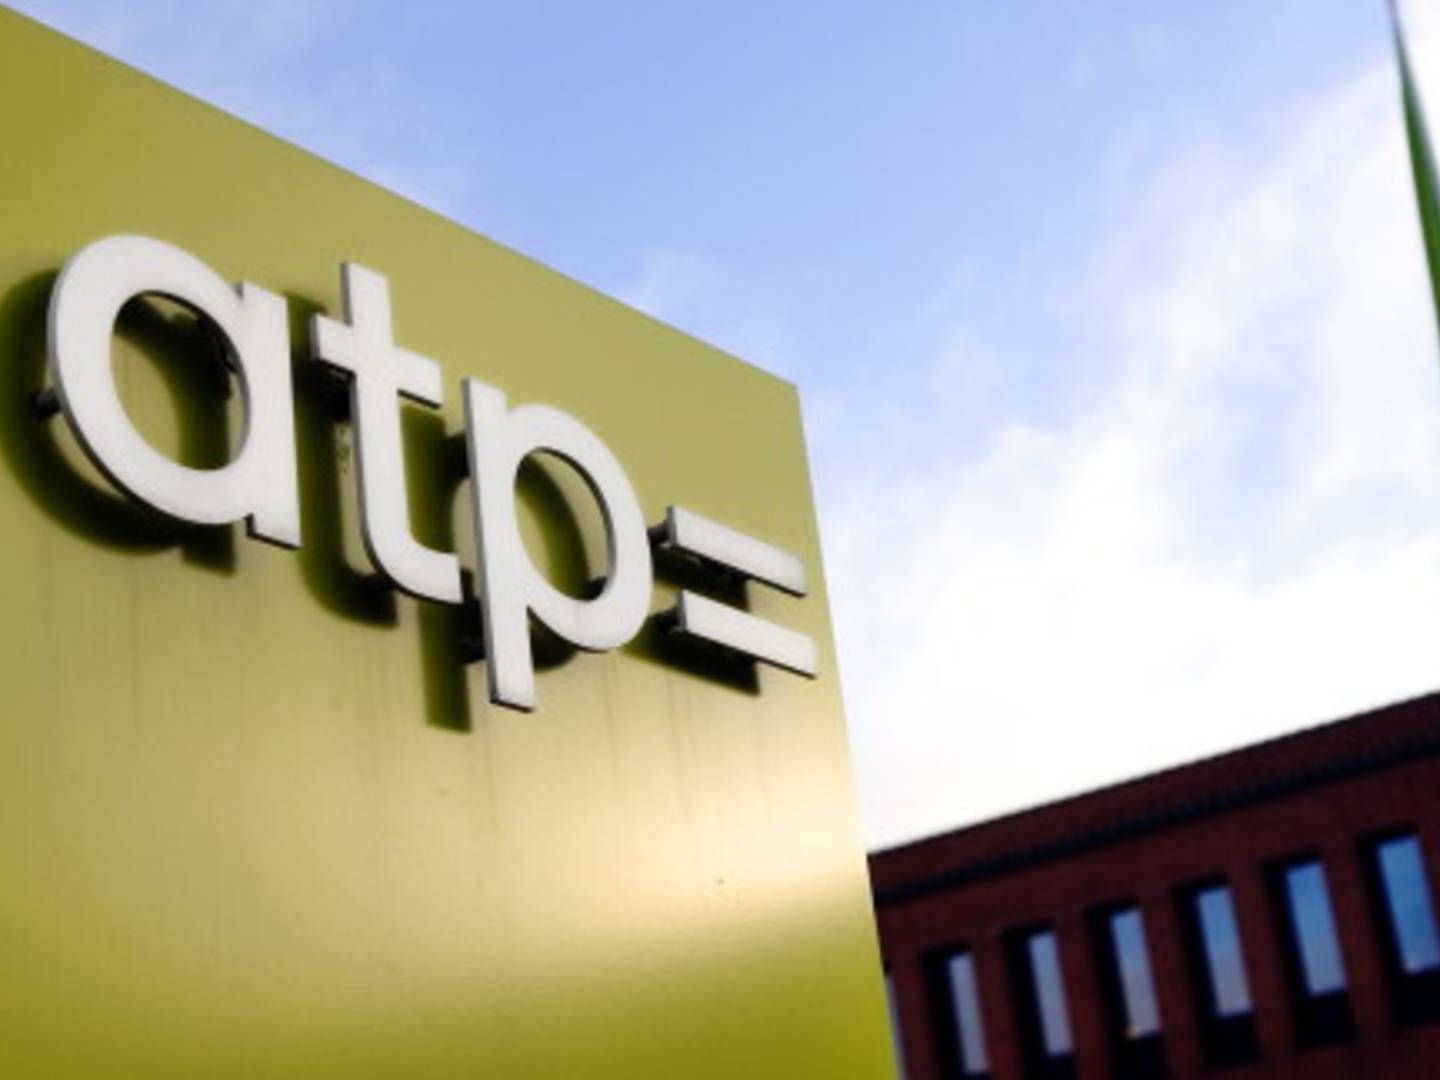 ATP's søgen efter ny topchef bliver ikke nem, vurderer branchekendere. | Foto: Thomas Borberg